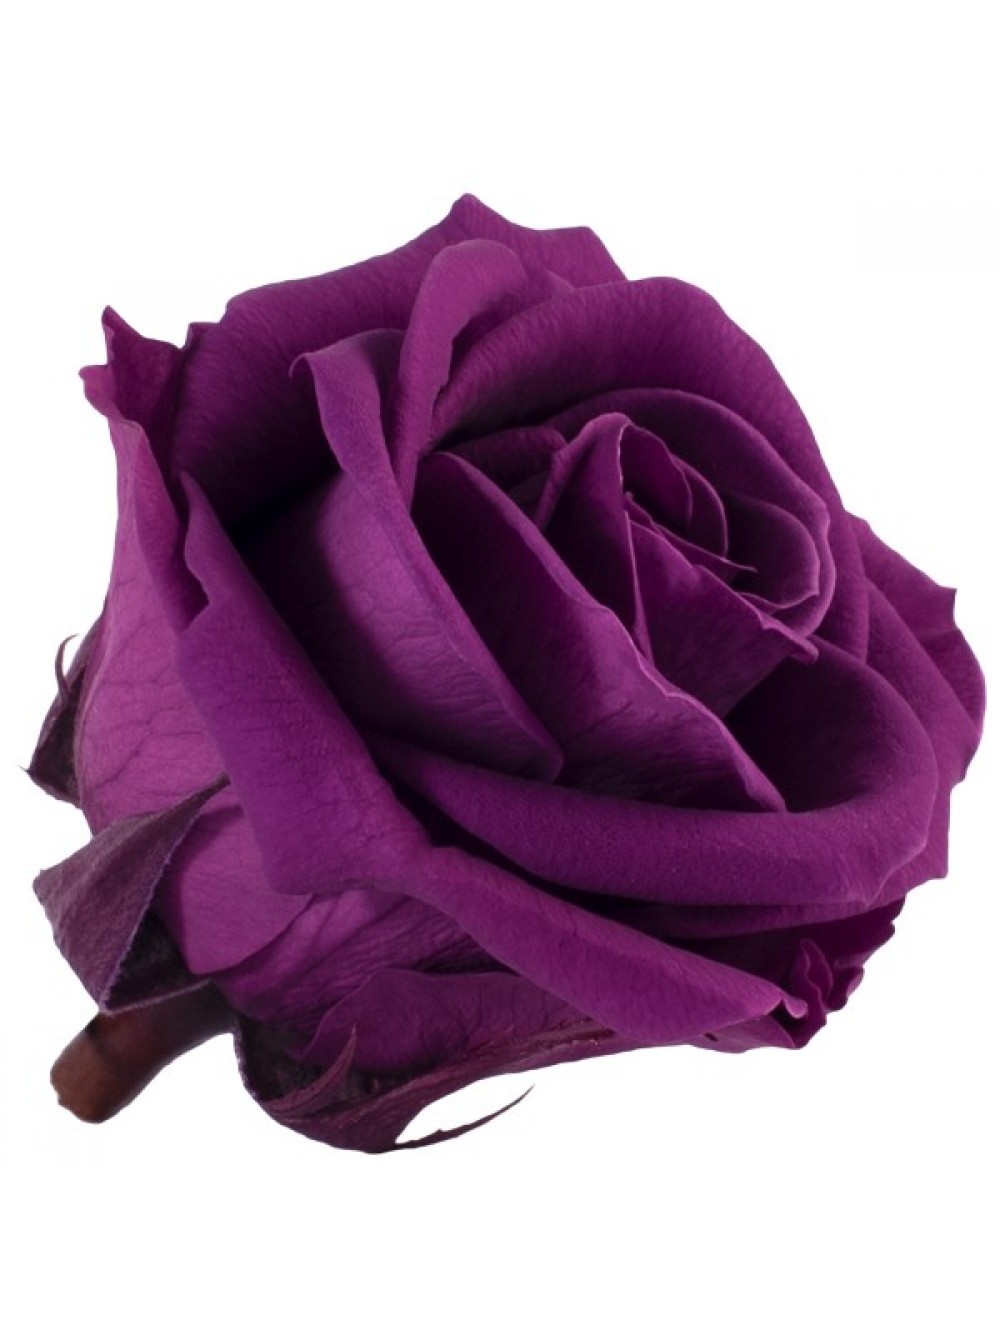 Темно-сиреневая роза в колбе - подарок на свадьбу. Купить